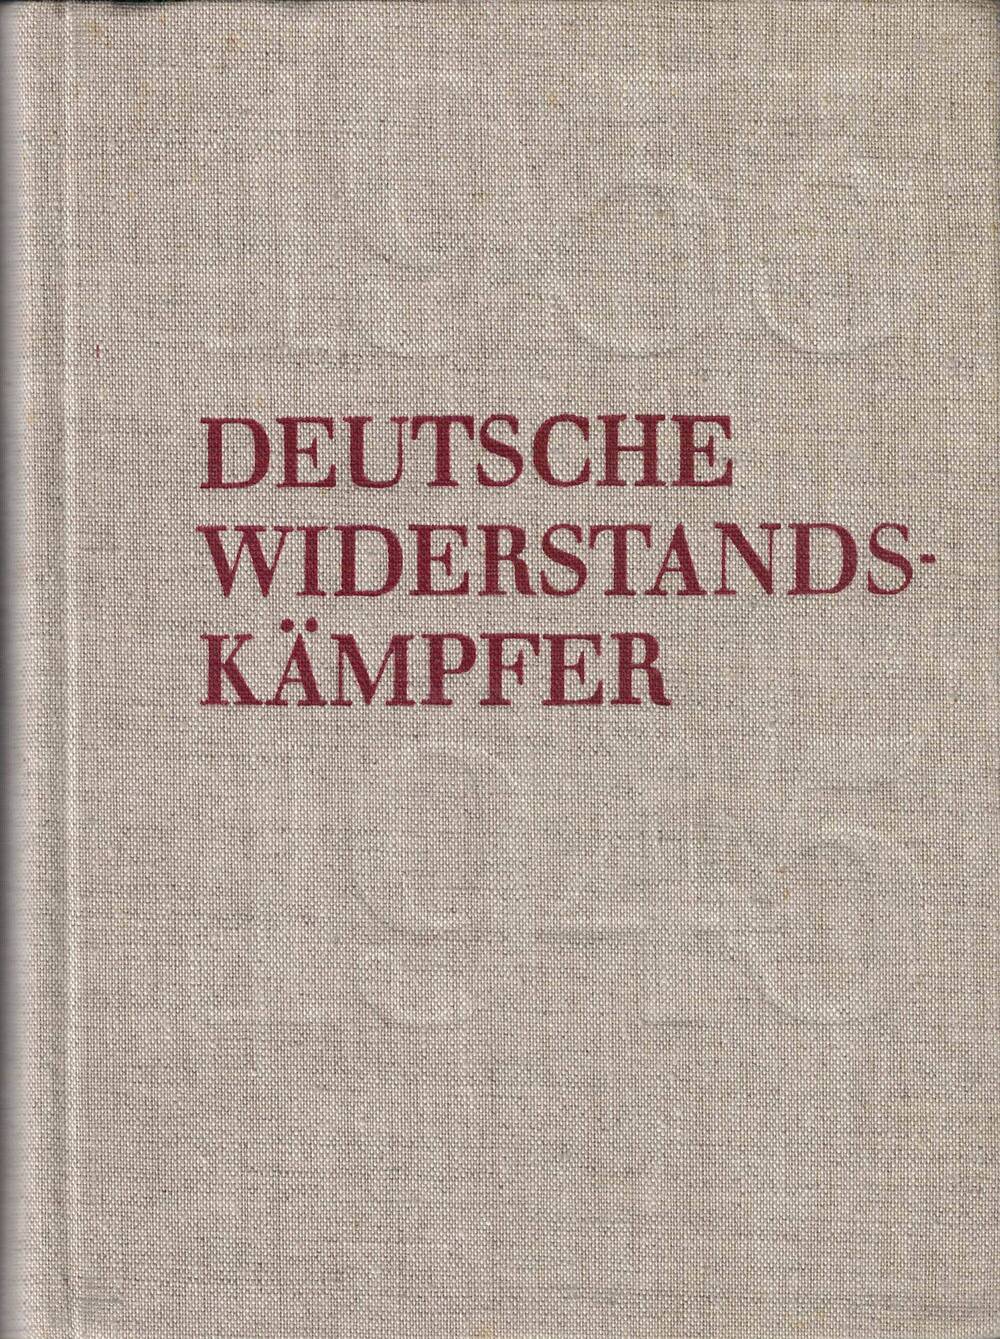 Книга Deutsche Widerstands-kämpfer, Том 2, на немецком языке из личной библиотеки Героя Советского Союза Егорова Михаила Алексеевича.